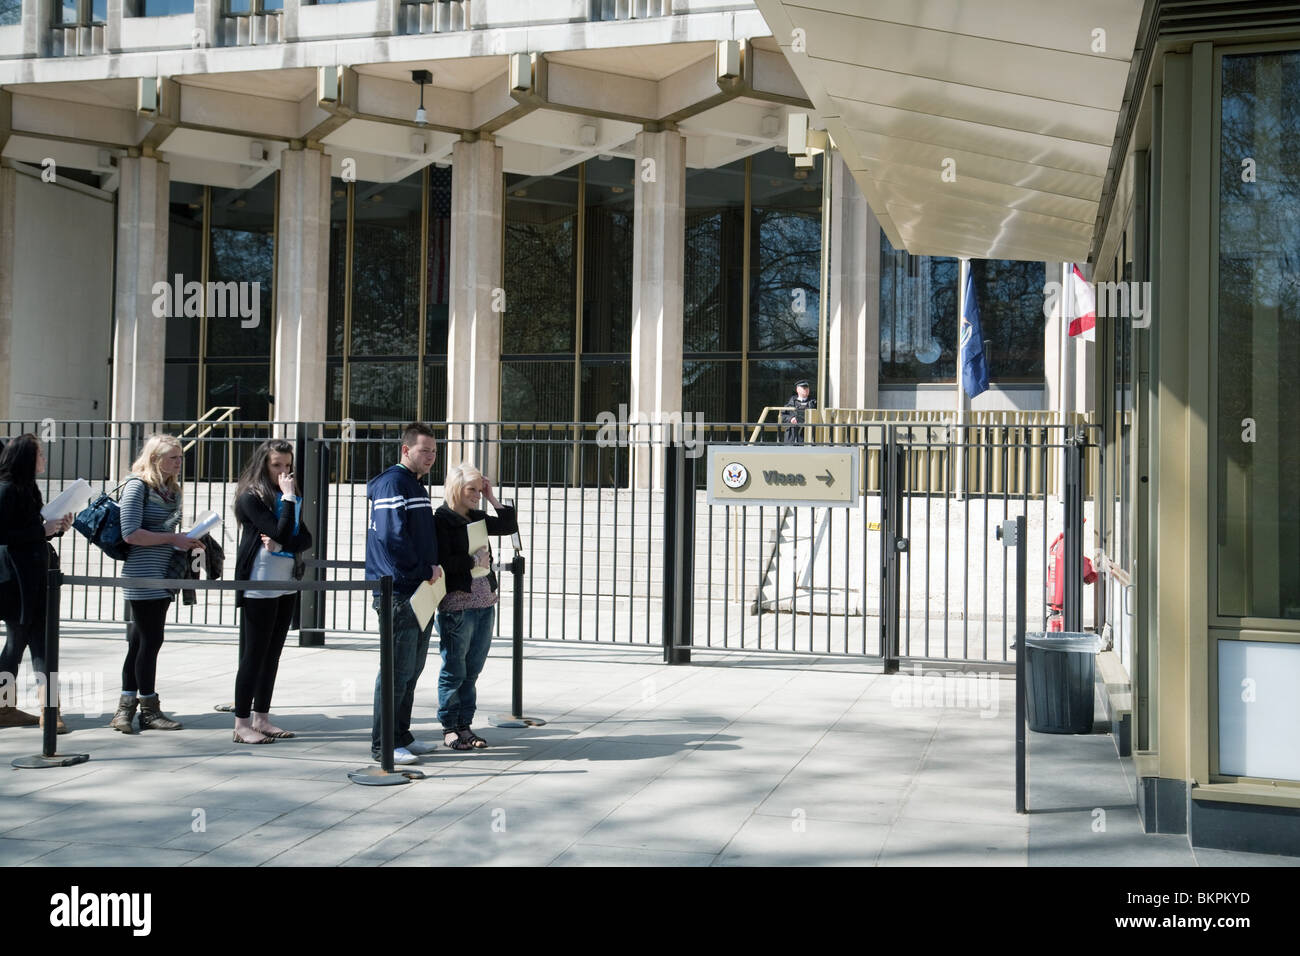 British adolescenti in attesa presso l'ambasciata degli Stati Uniti di applicare per i visti, l'ambasciata USA, Grosvenor Square, London REGNO UNITO Foto Stock